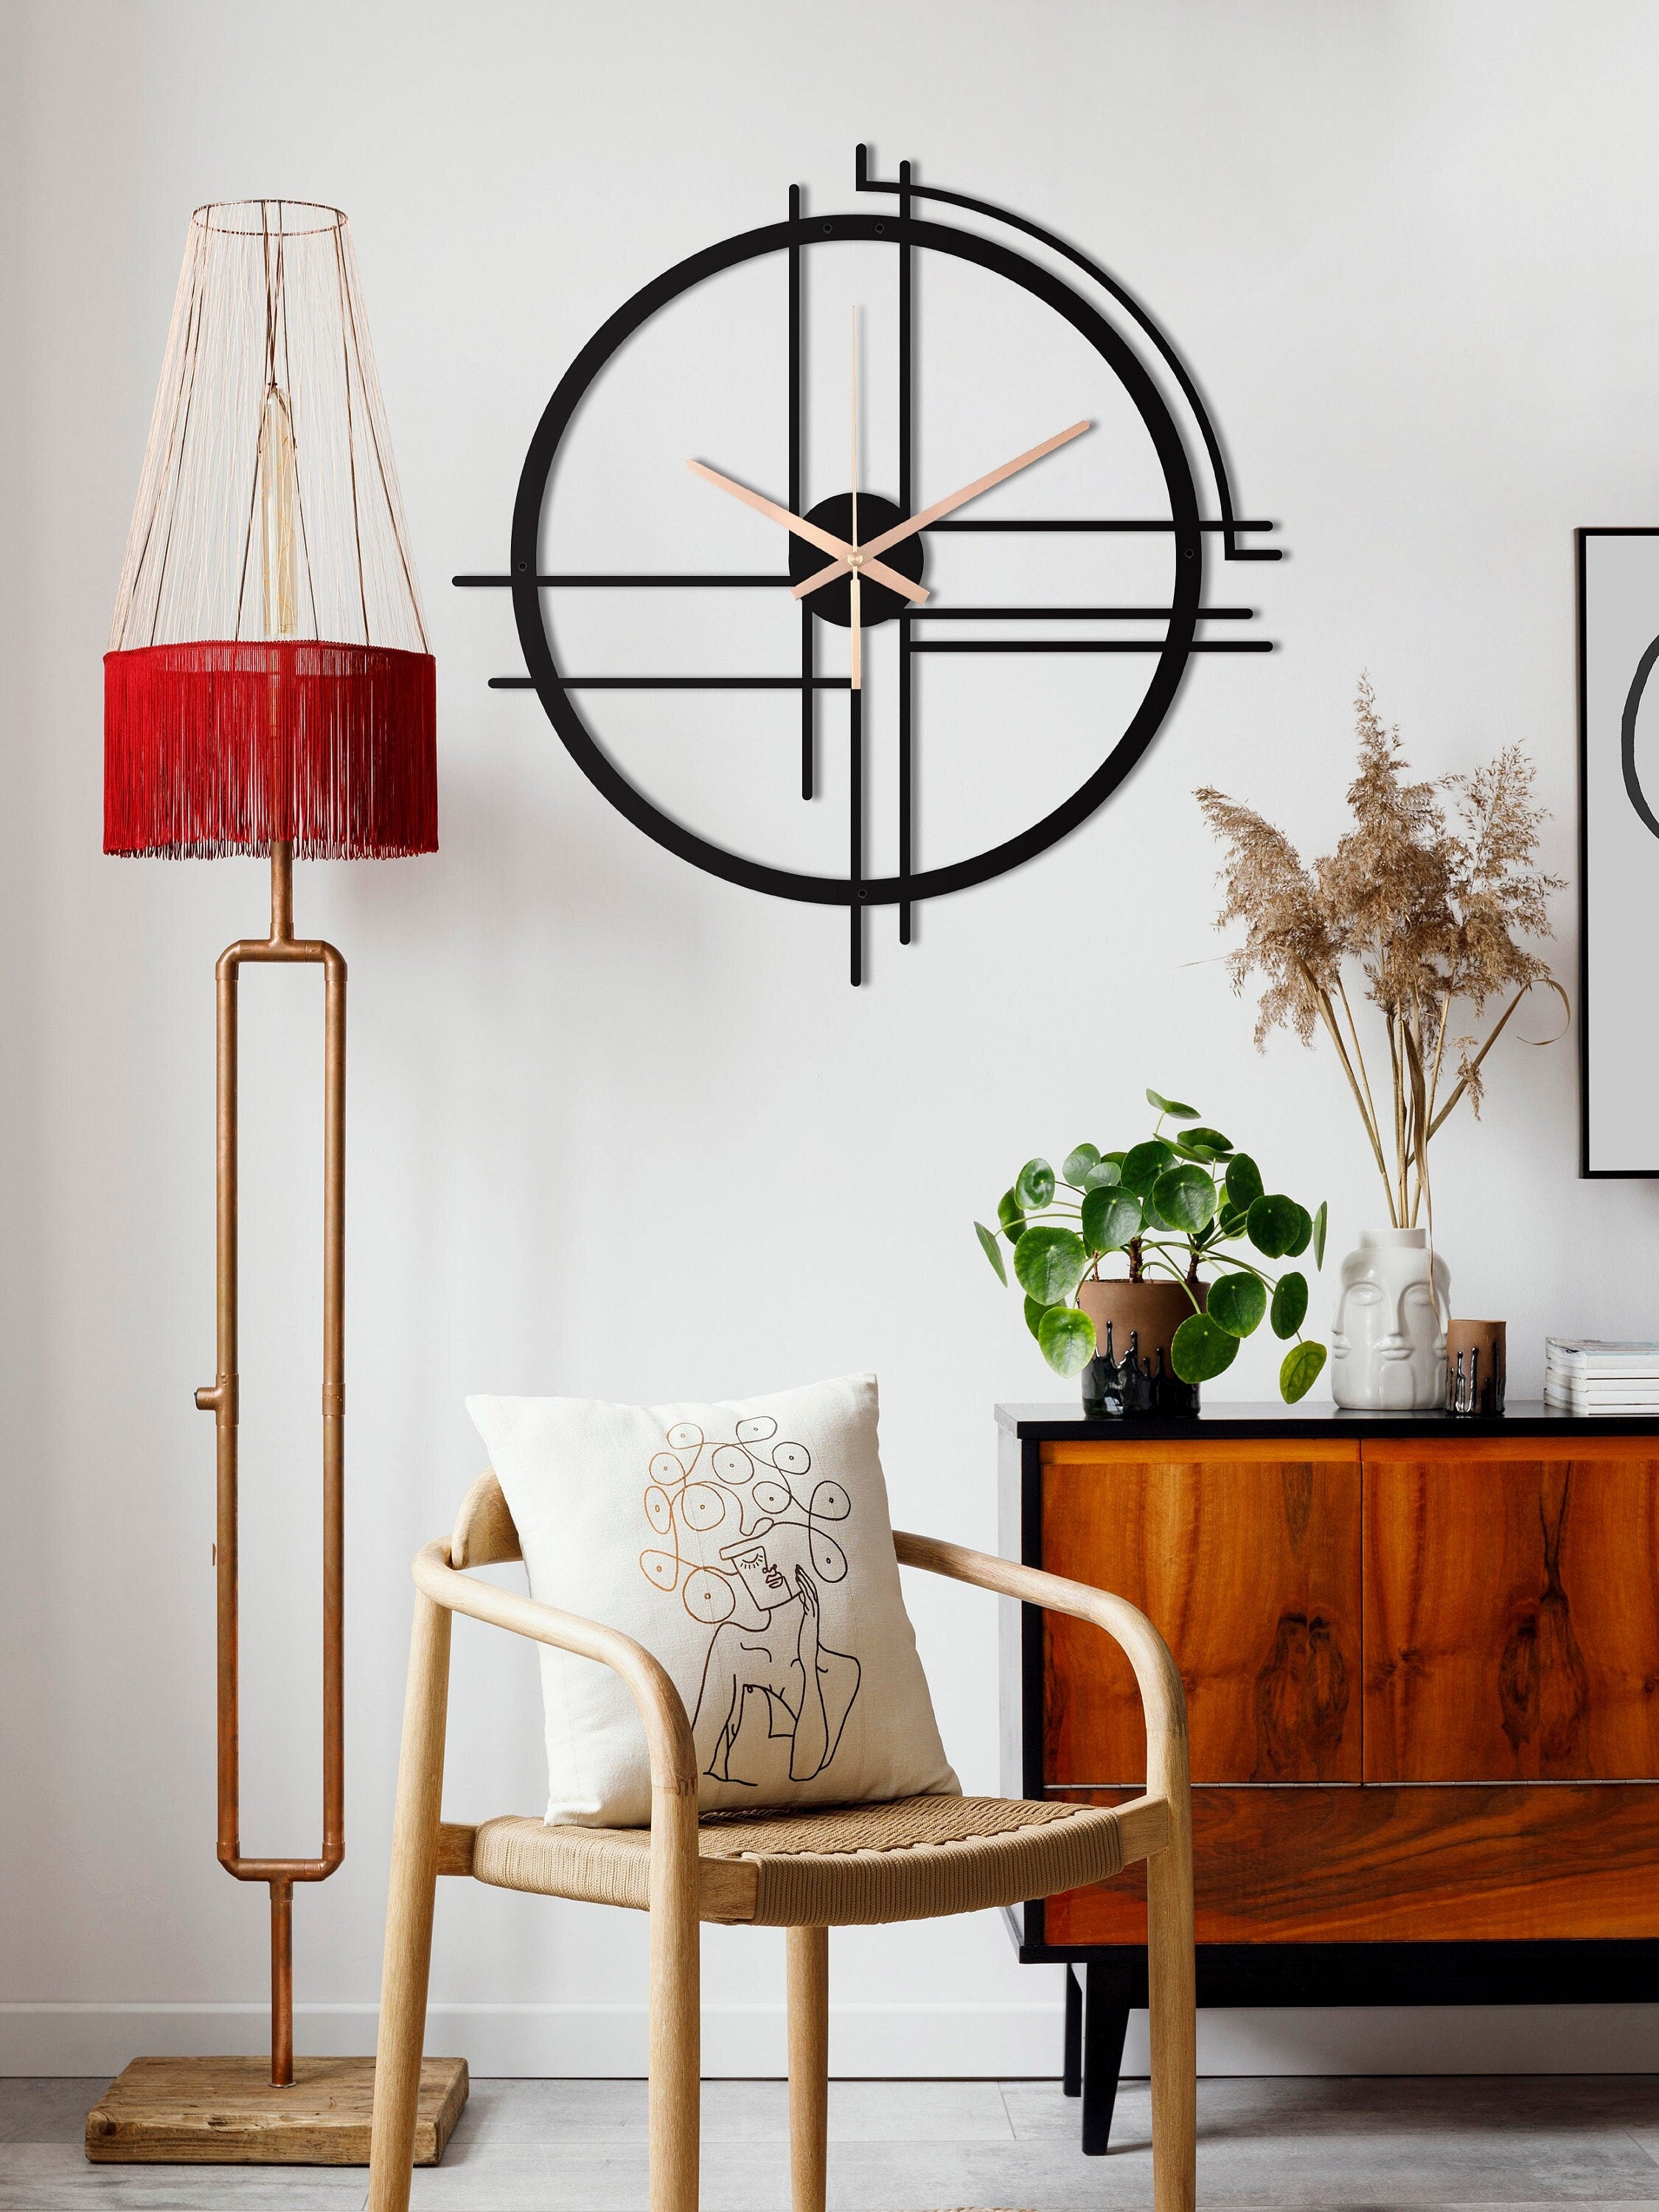 Minimalist Clock, Modern Wall Clock, Large Wall Clock, Metal Wall Clock, Small Wall Clock, Laser Cut Clock, Decorative Clocks For Wall